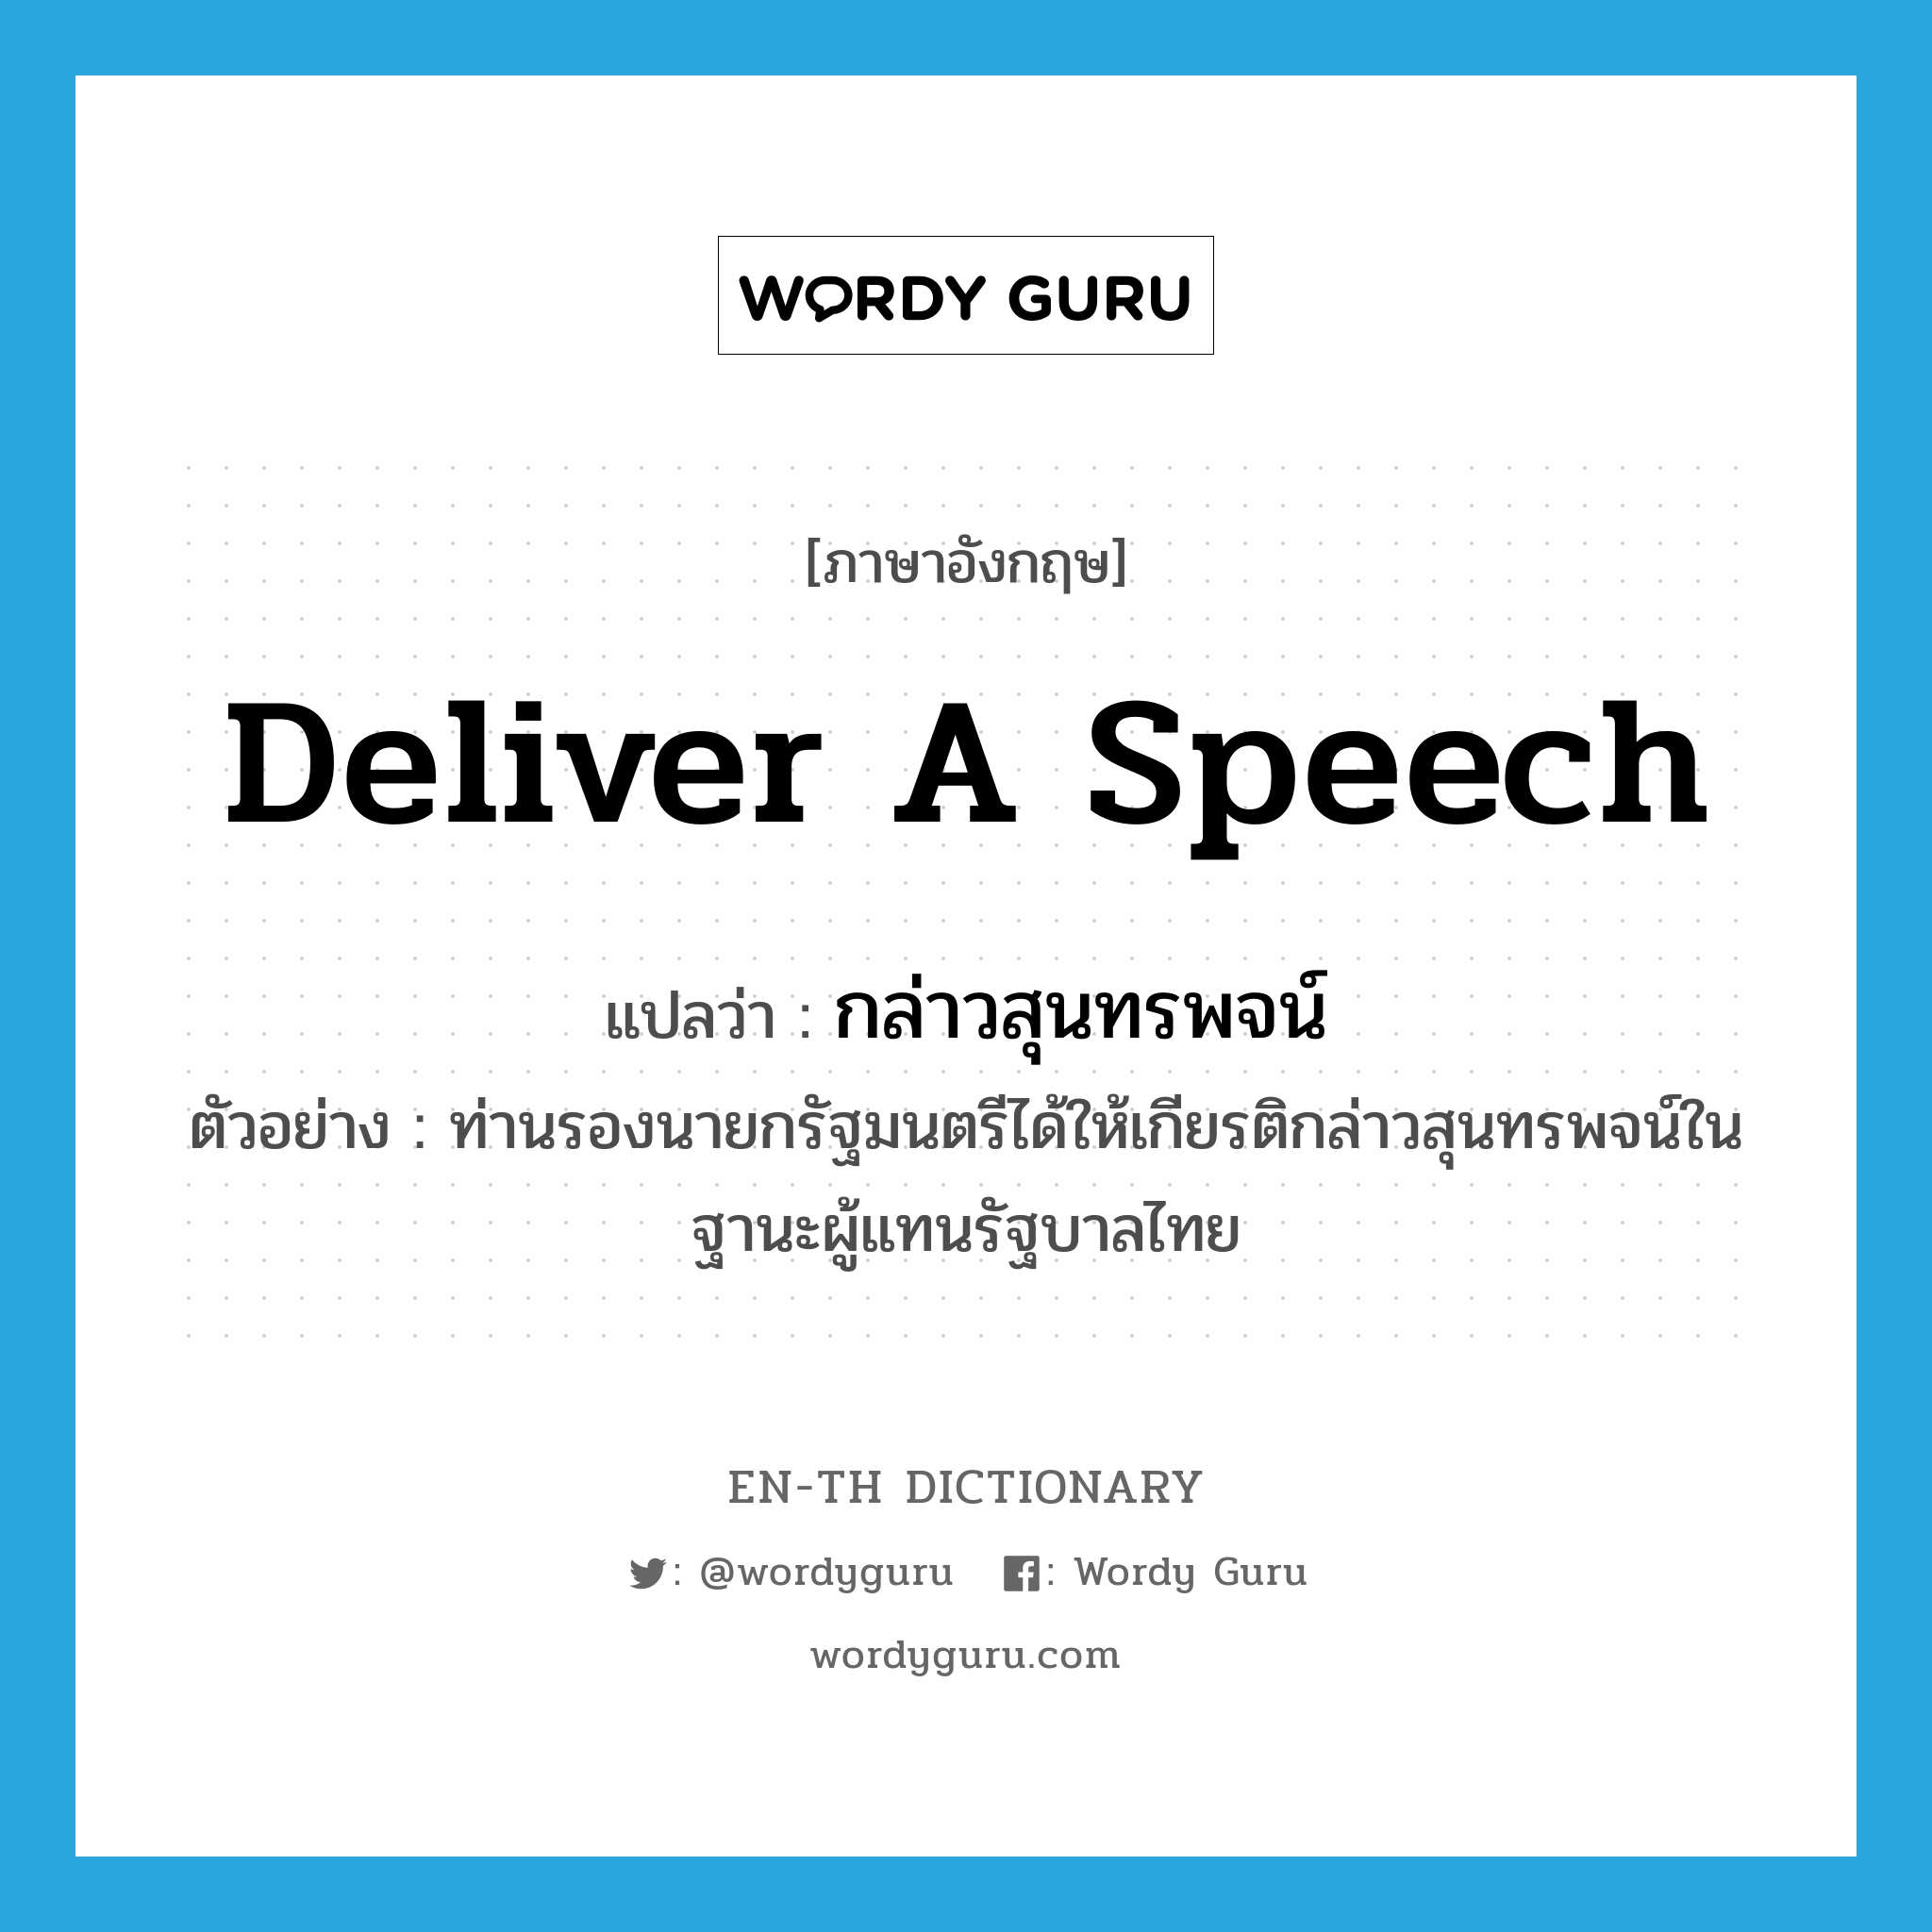 deliver a speech แปลว่า?, คำศัพท์ภาษาอังกฤษ deliver a speech แปลว่า กล่าวสุนทรพจน์ ประเภท V ตัวอย่าง ท่านรองนายกรัฐมนตรีได้ให้เกียรติกล่าวสุนทรพจน์ในฐานะผู้แทนรัฐบาลไทย หมวด V